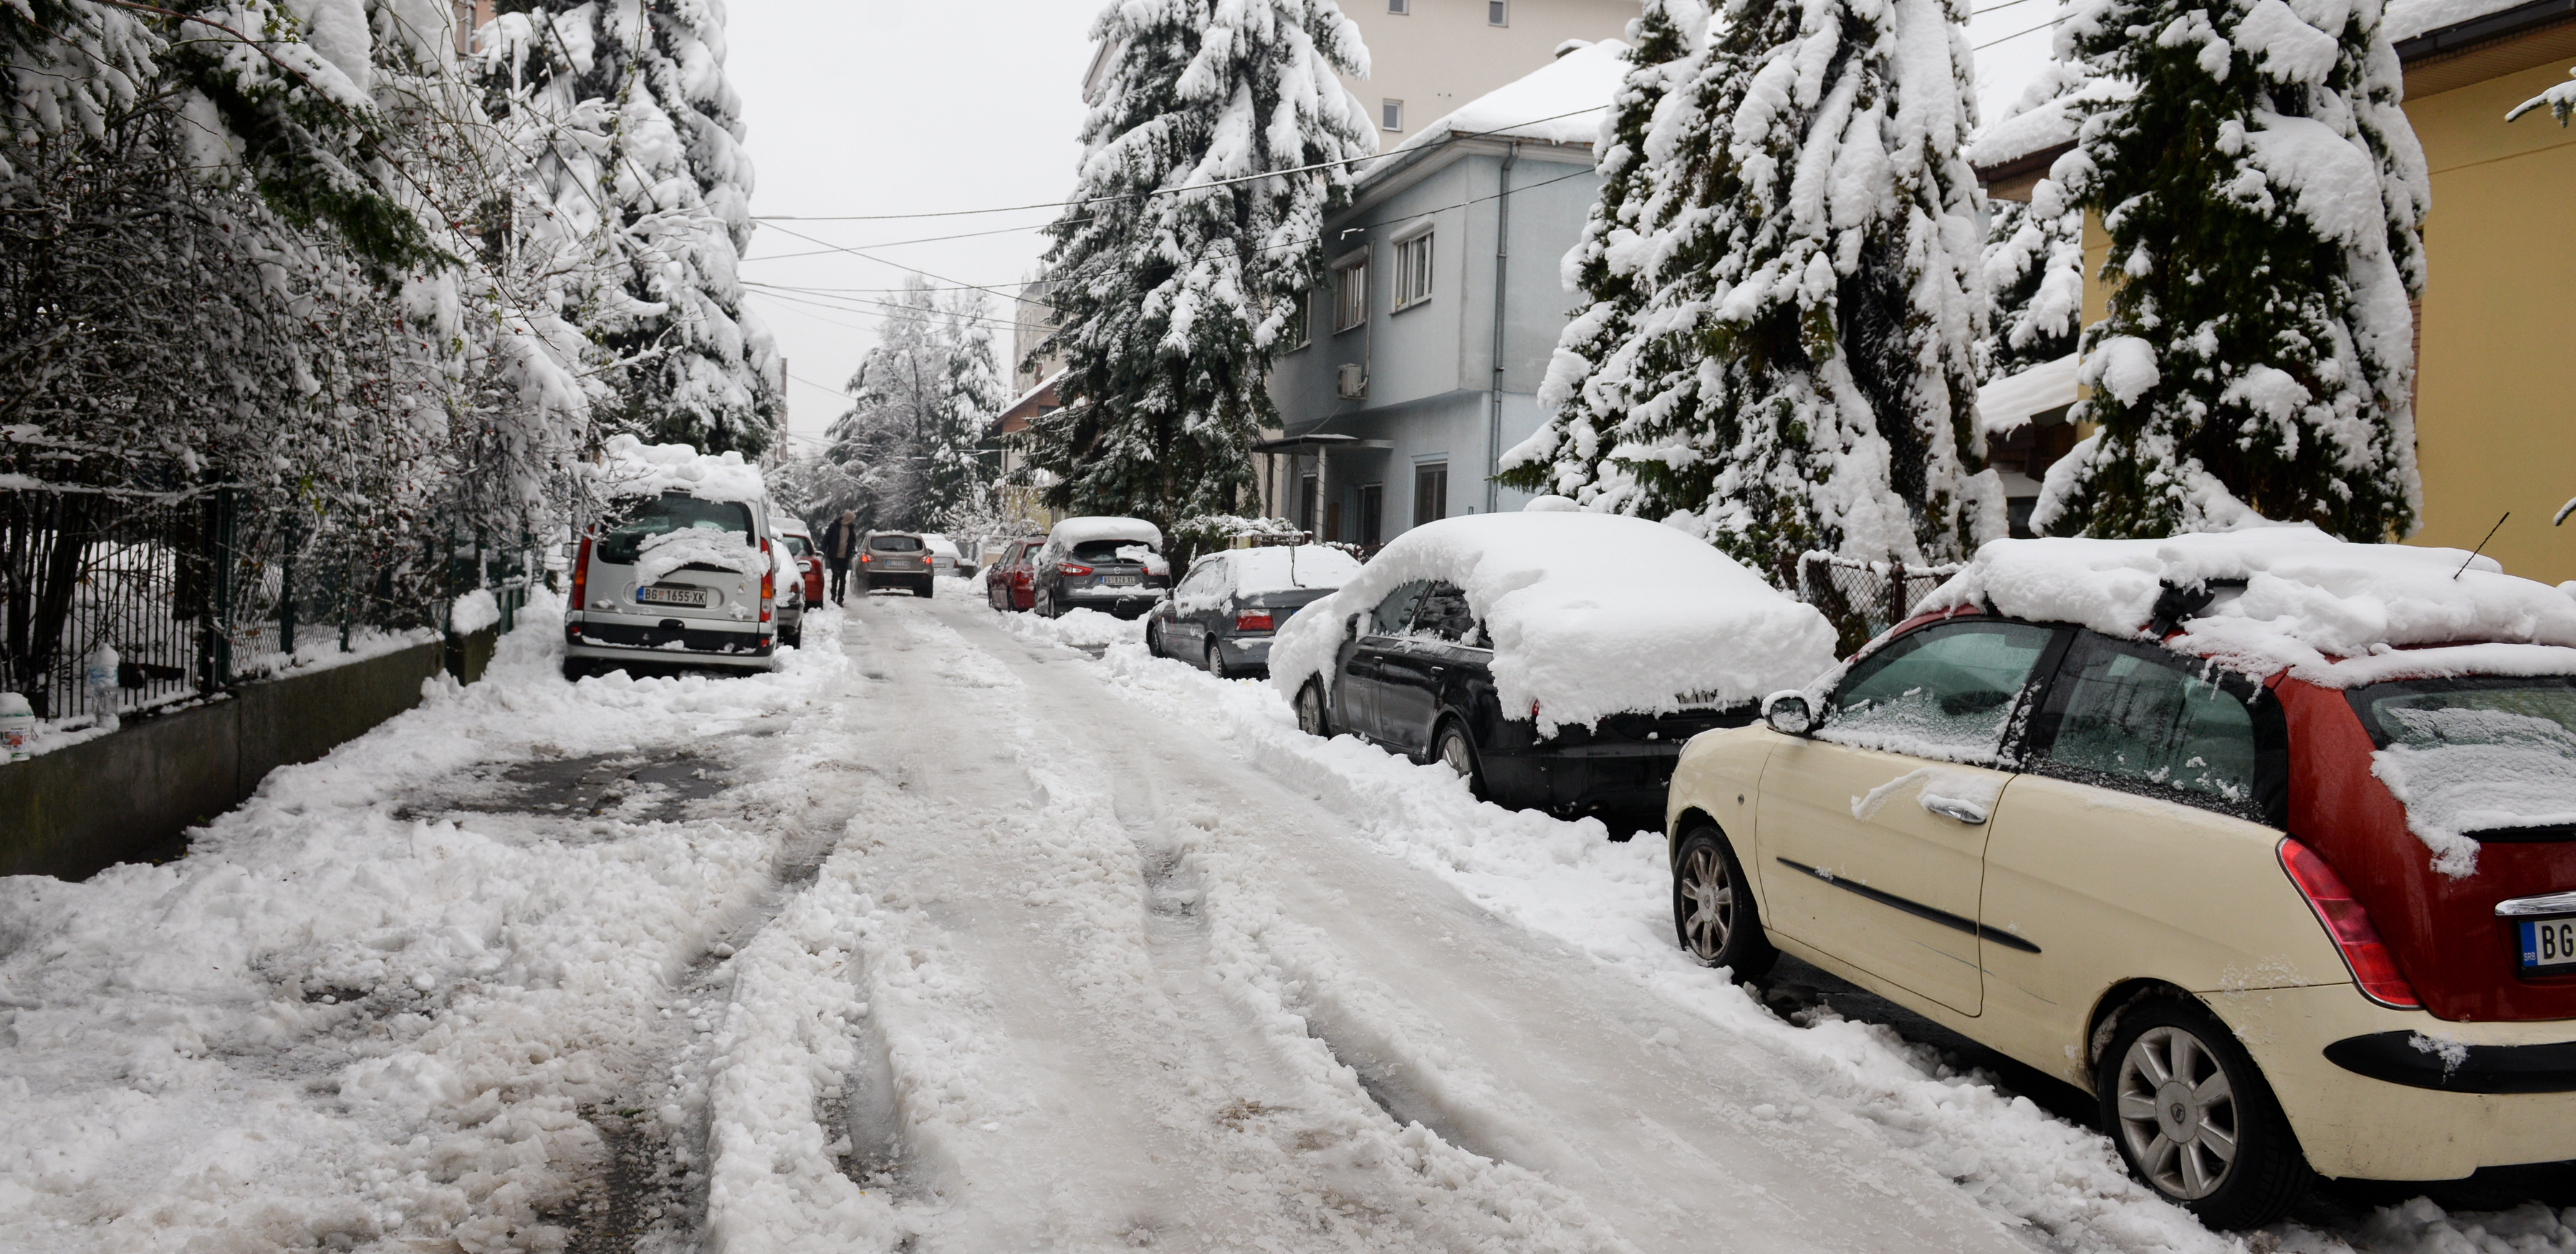 TRI SAVETA ZA HLADNE DANE Kako da sačuvate automobil od zime